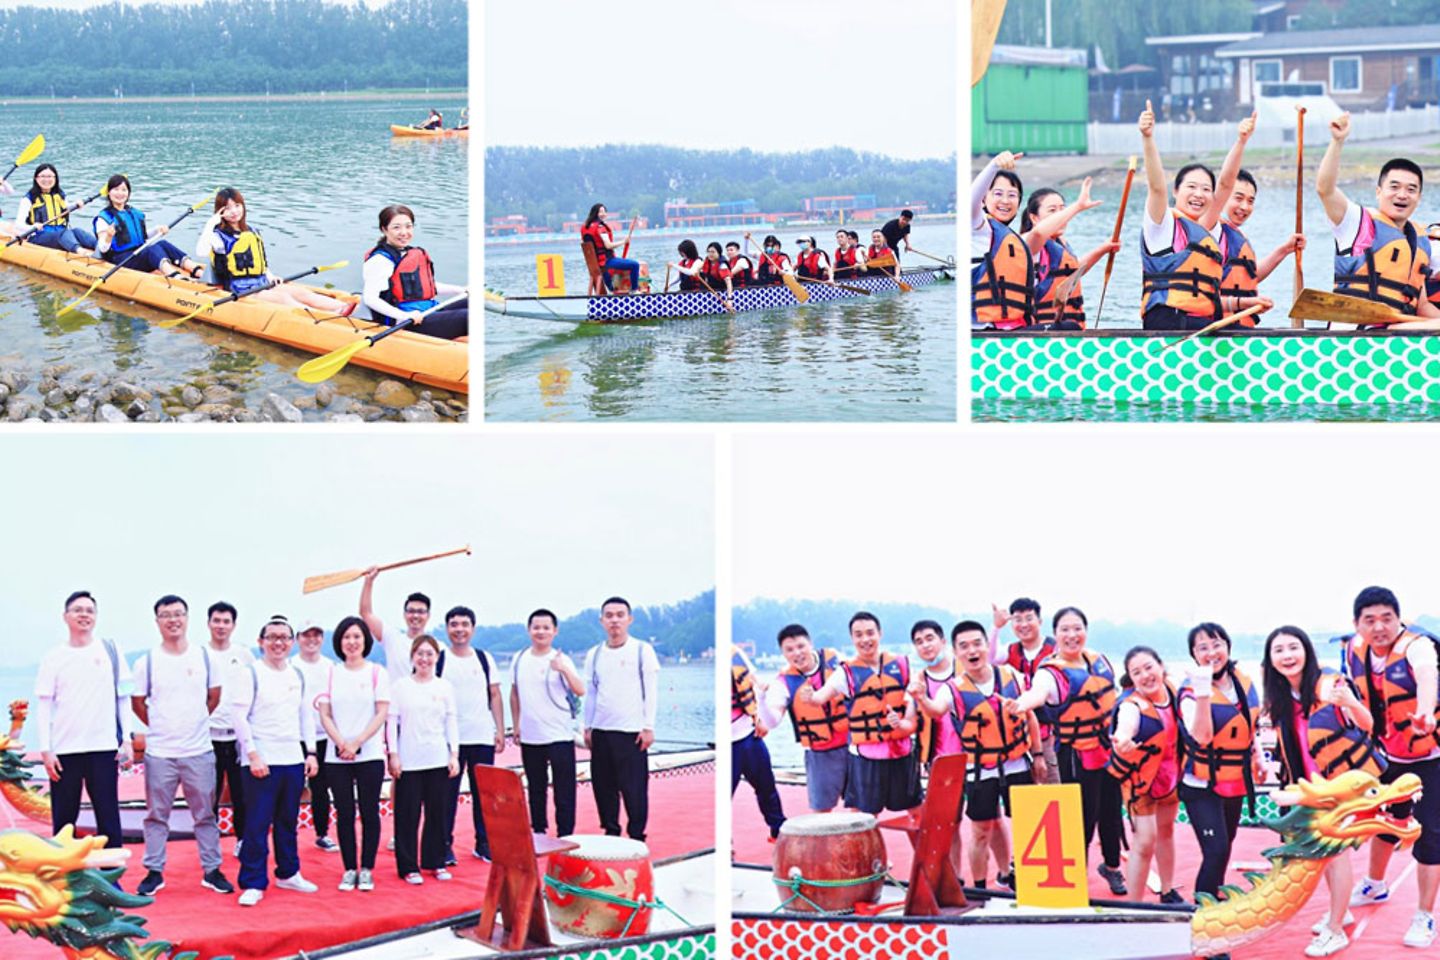 十五周年庆典活动 - canoe